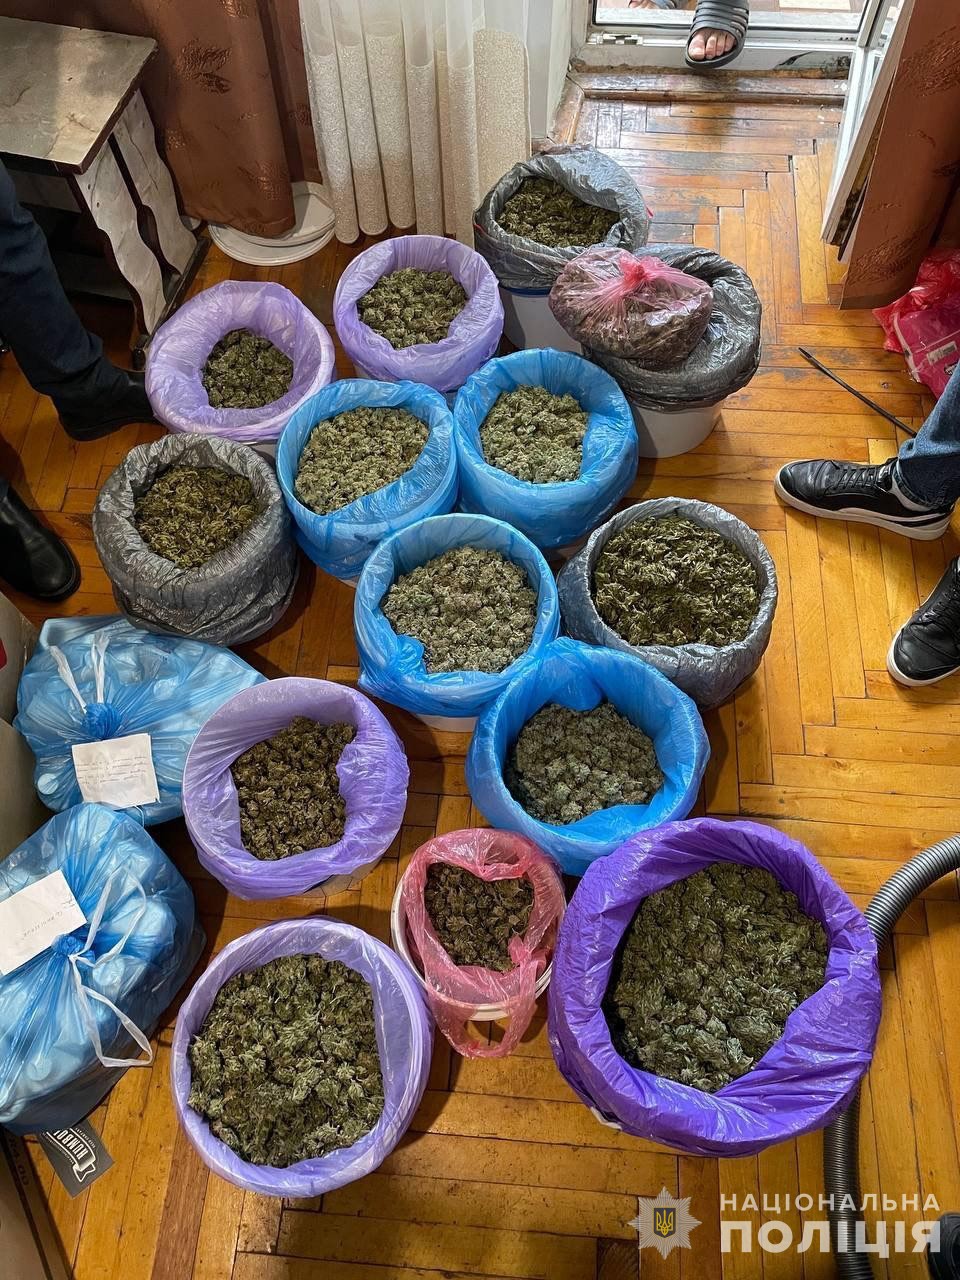 Нацполиция изъяла наркотики на 150 млн грн: Одесская область также была в сети наркодилеров